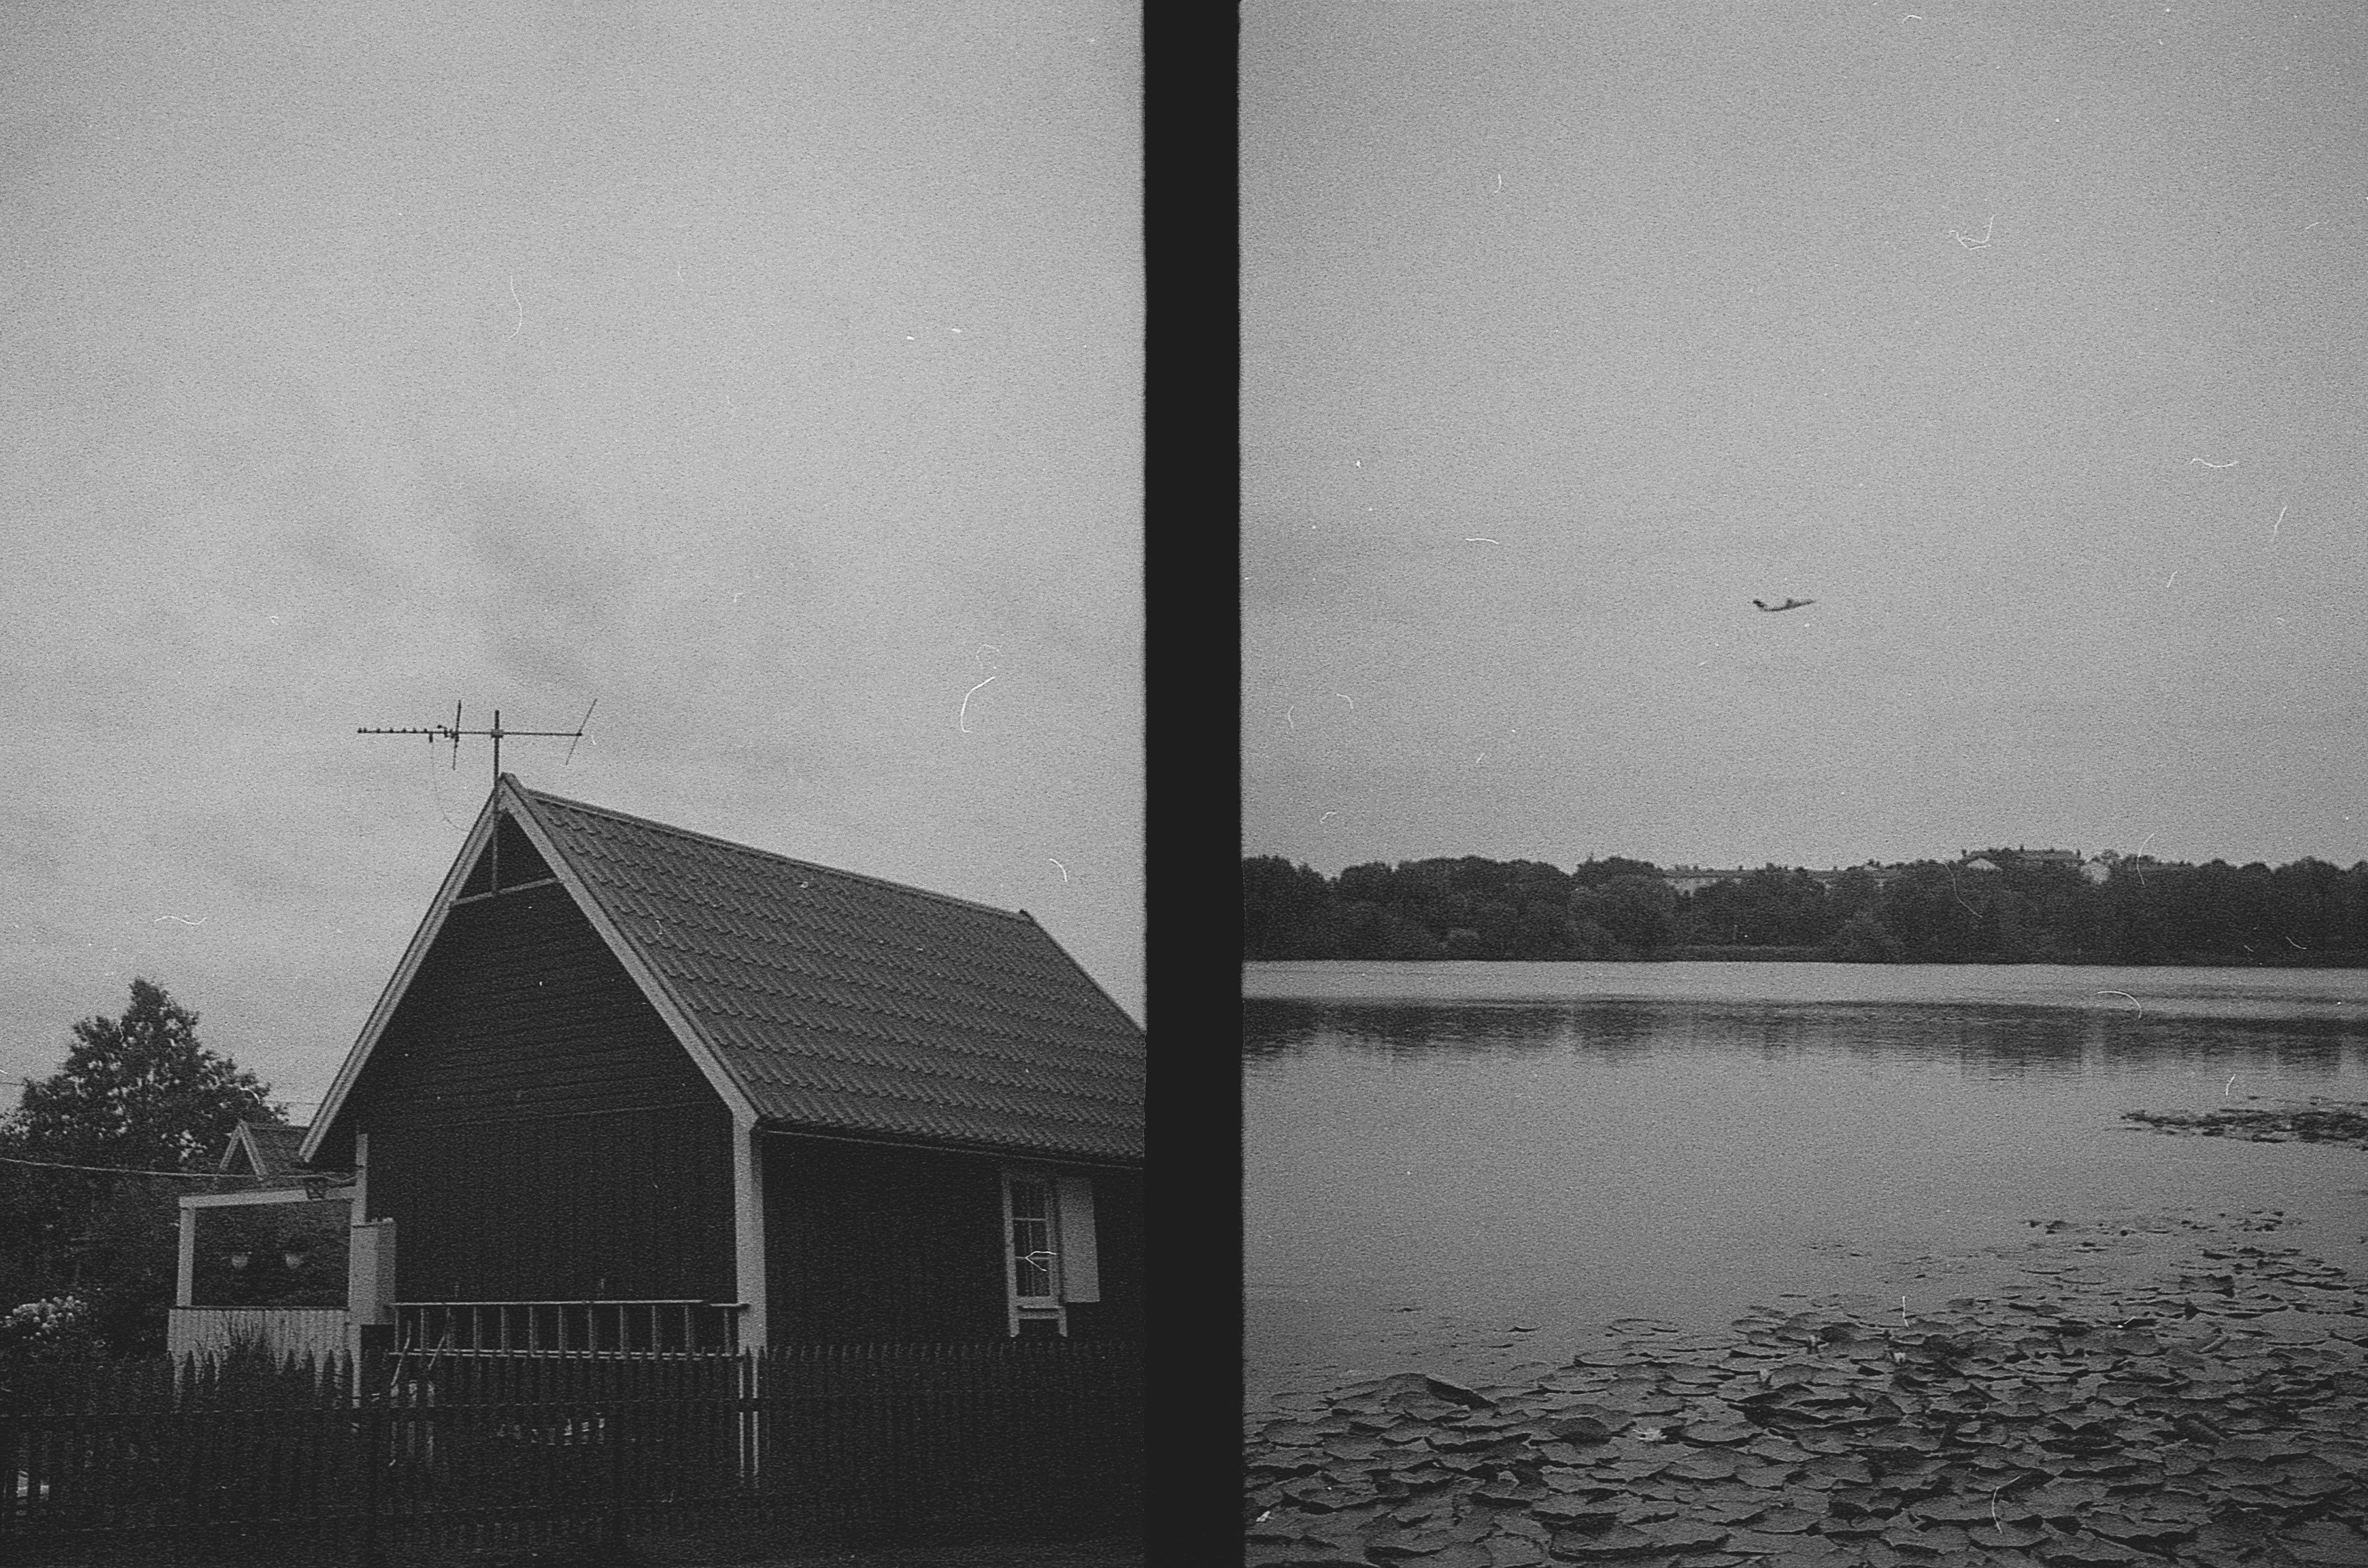 svartvit diptyk på litet hus och vy över sjö